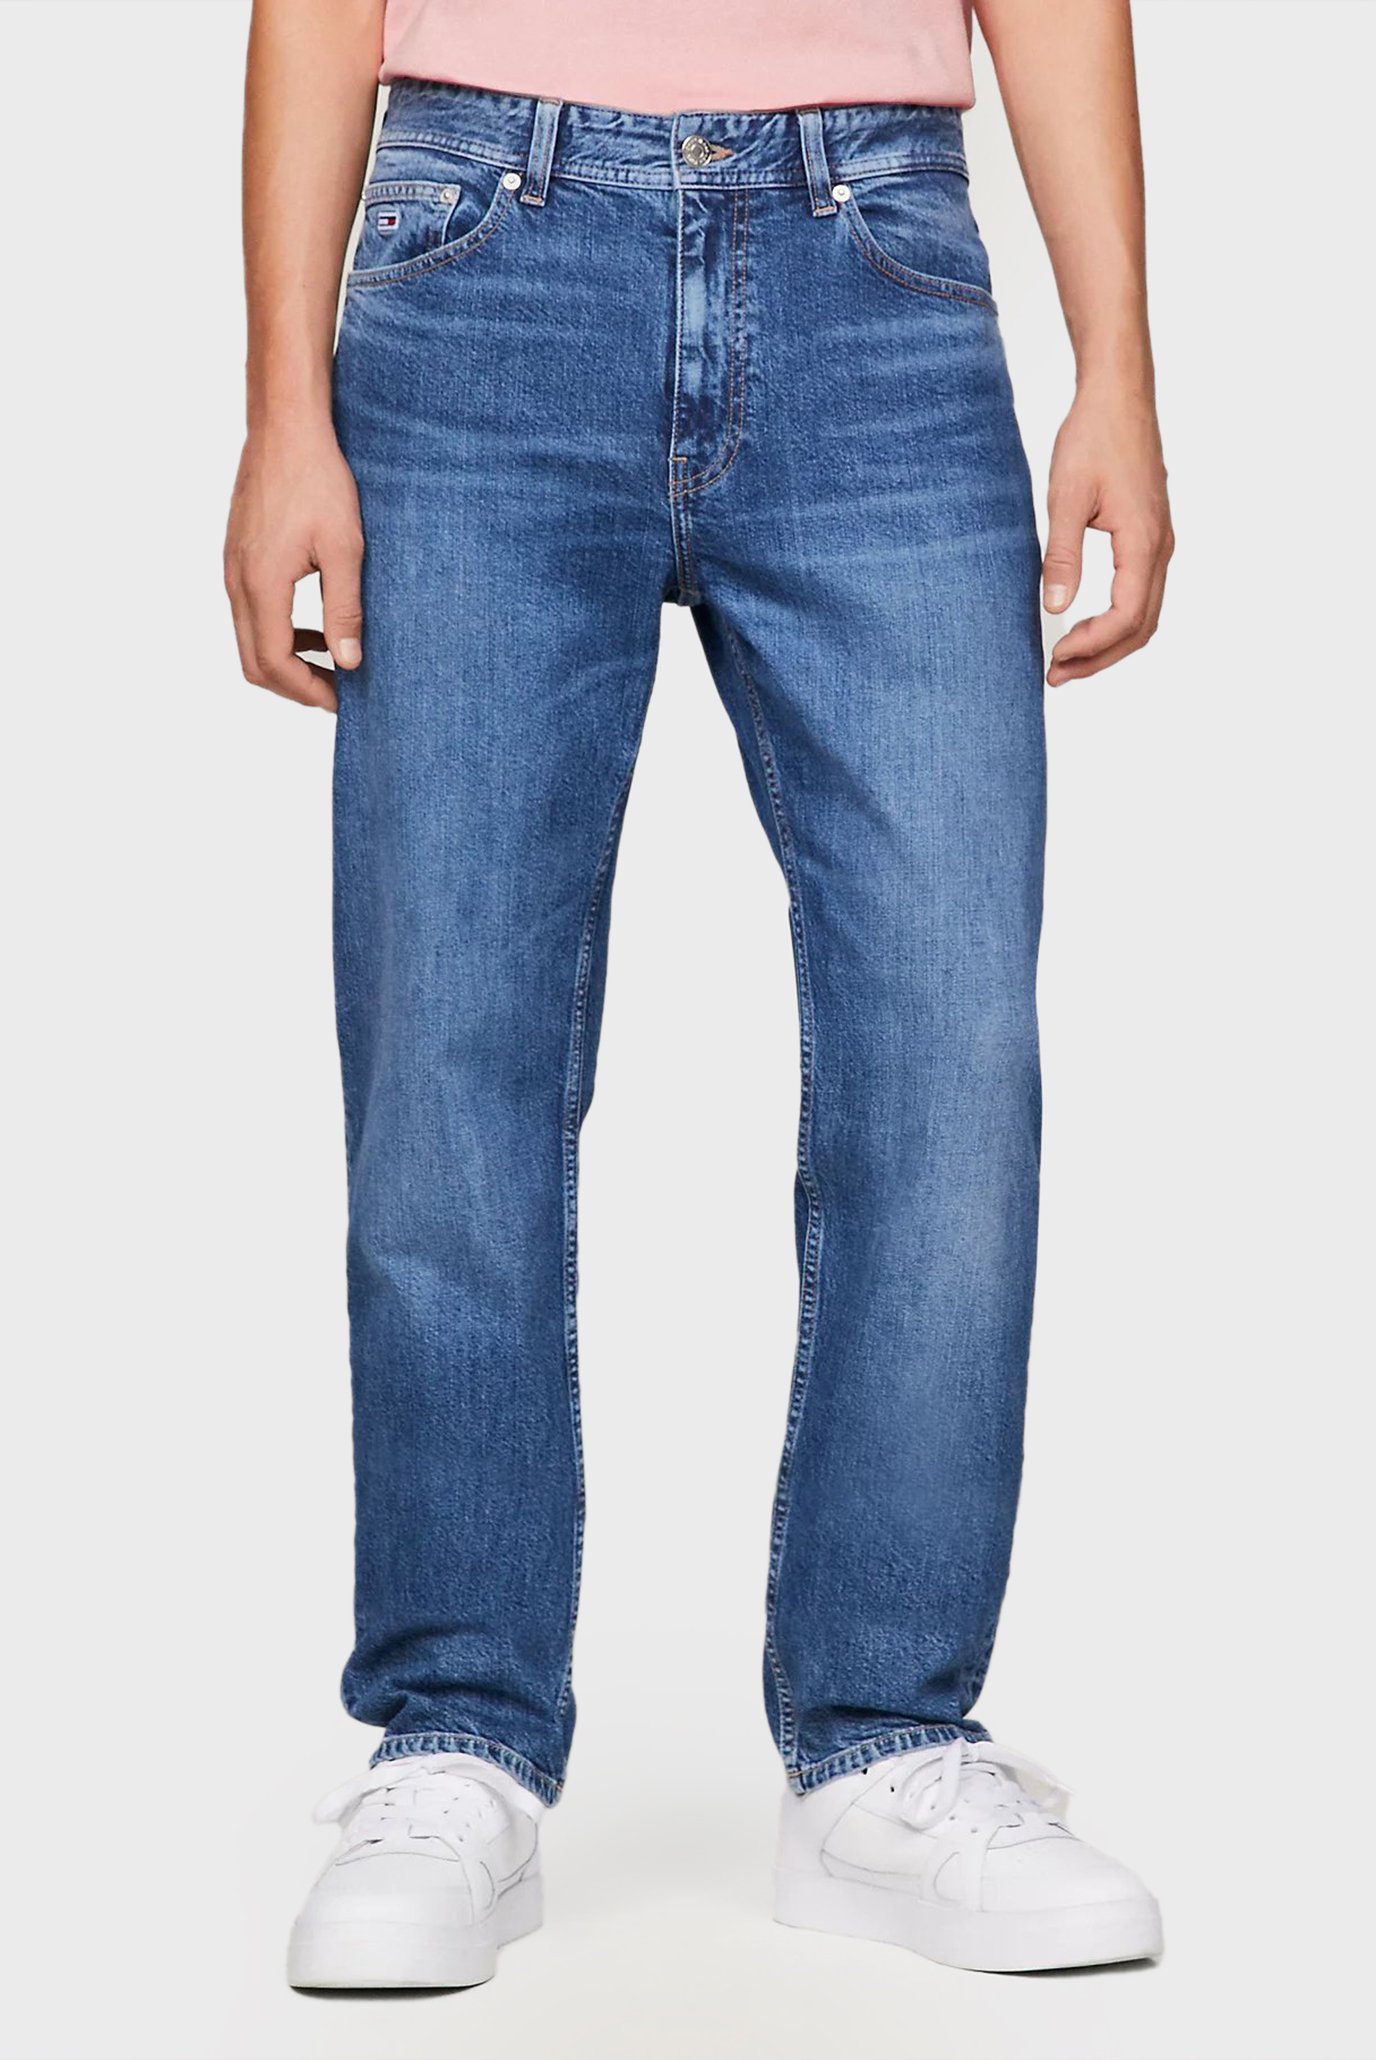 Мужские синие джинсы ETHAN RLXD STRGHT 1